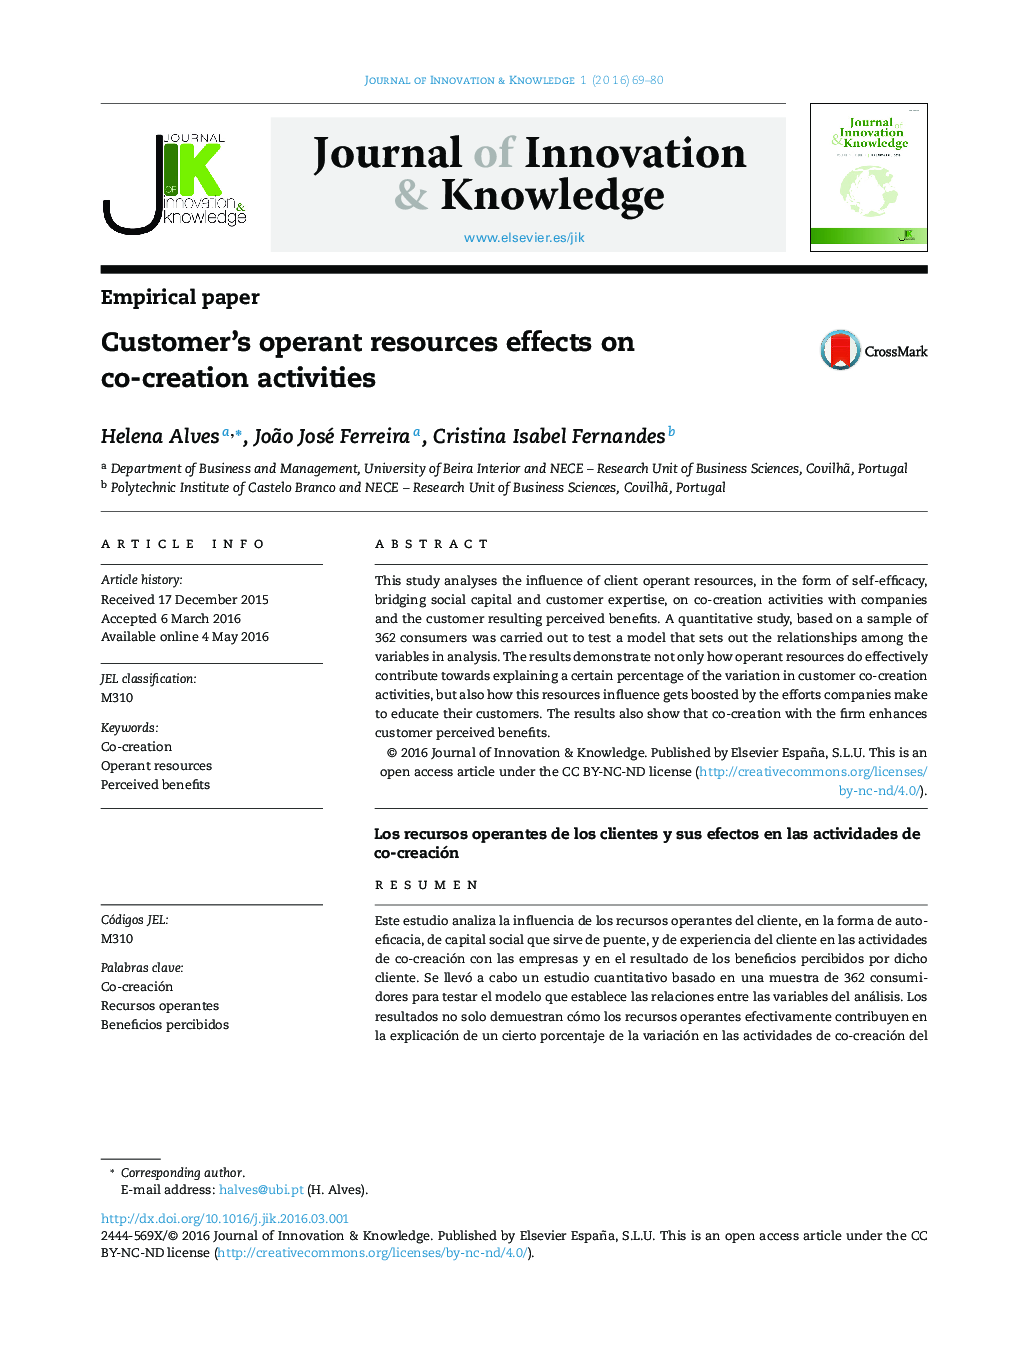 اثرات منابع عمل کننده مشتری بر روی فعالیت های همکاری مشترک